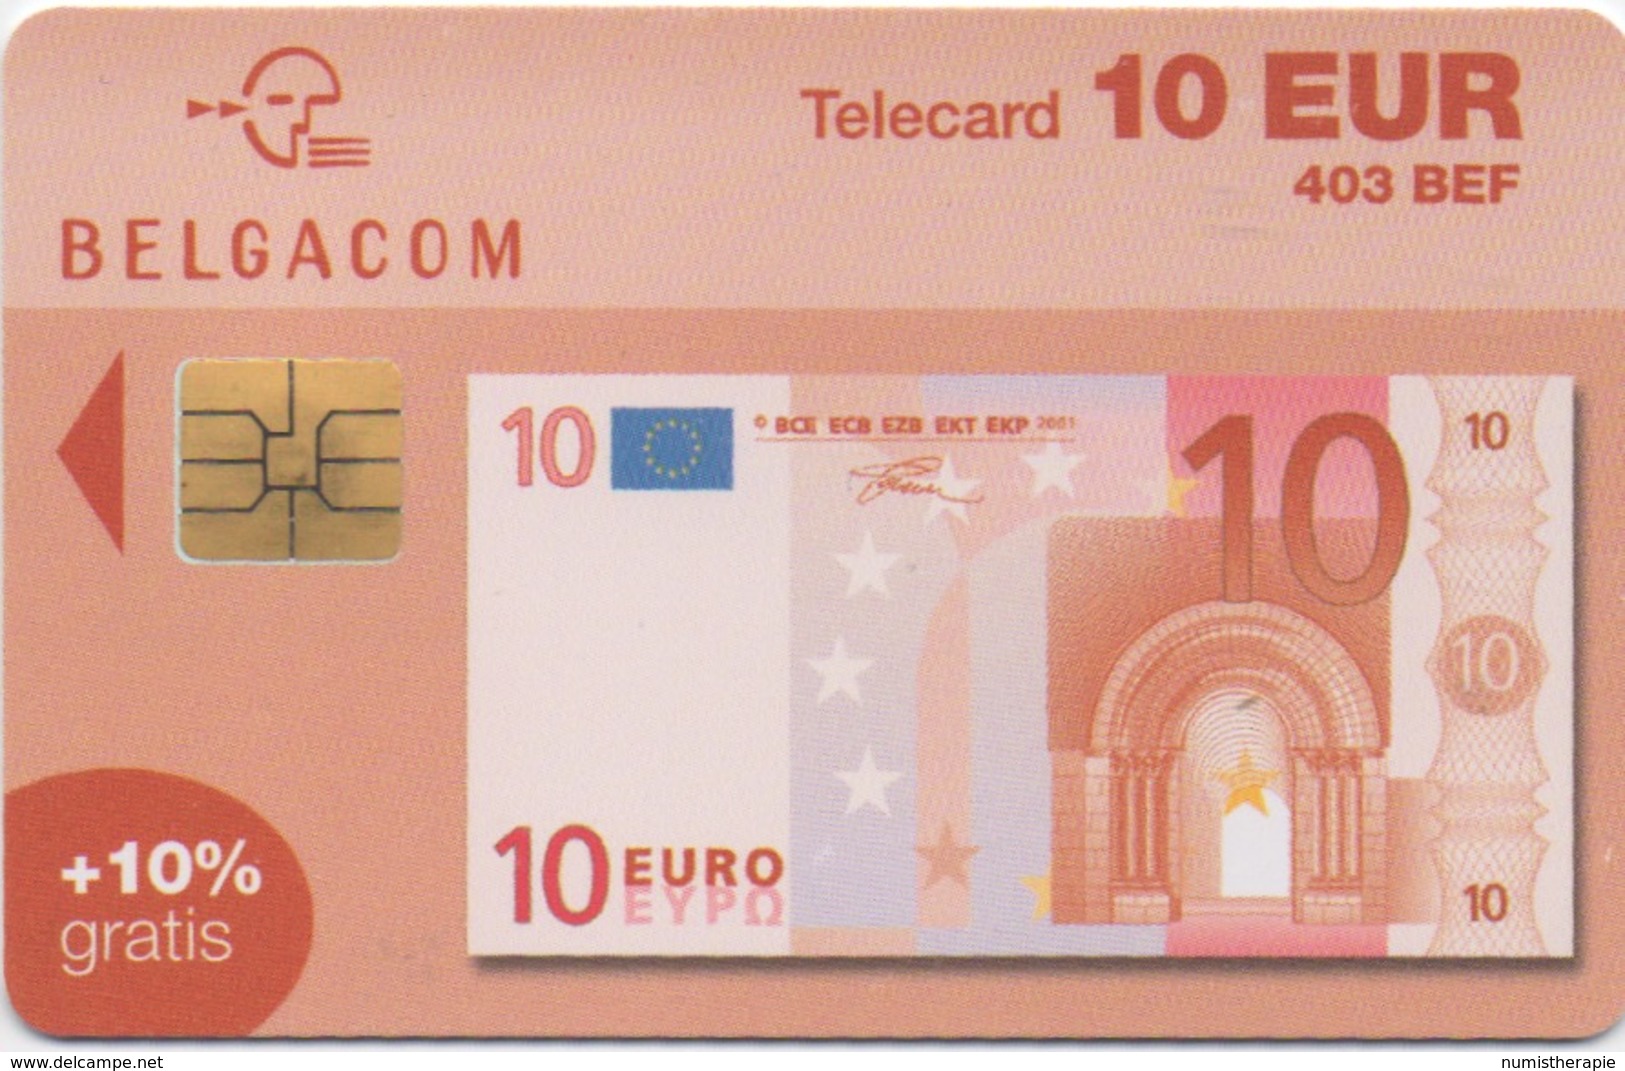 Télécarte Belgacom : 10 EUR Billet De Banque (403 BEF) Valable Jusqu'au 31/12/2004 - Francobolli & Monete